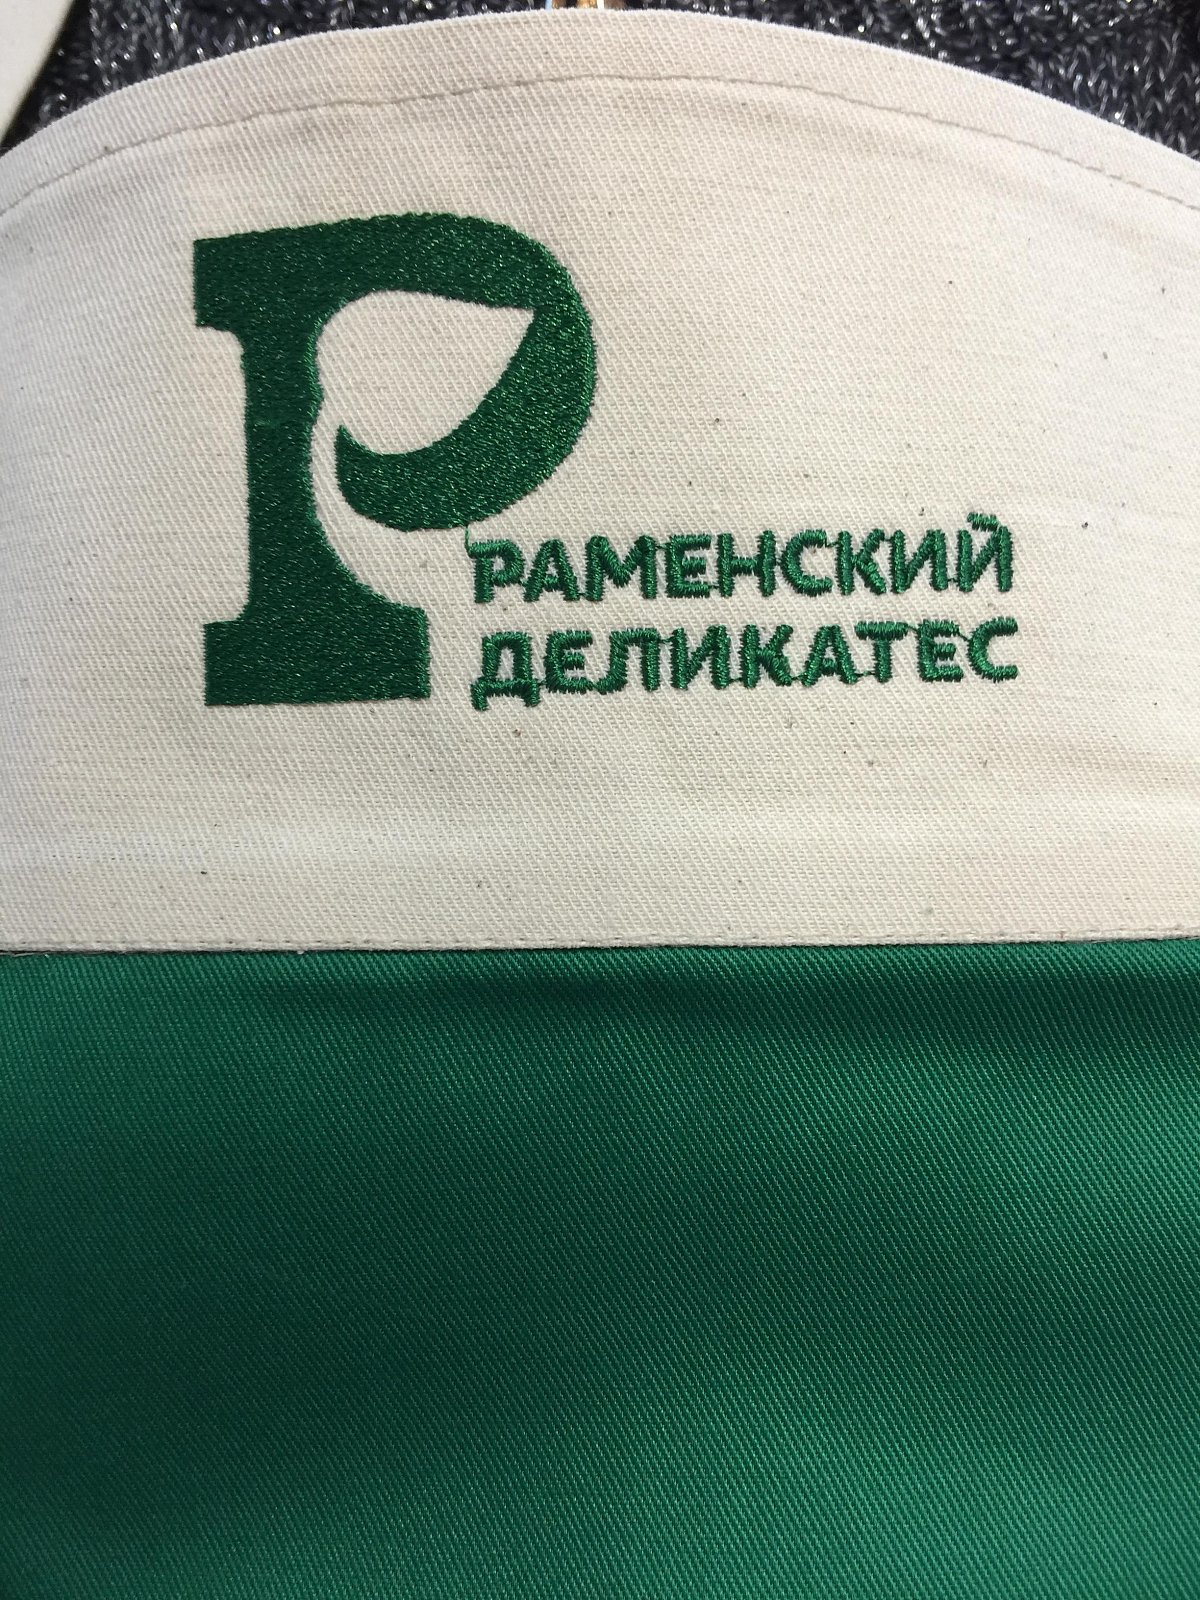 Вышивка логотипа на заказ